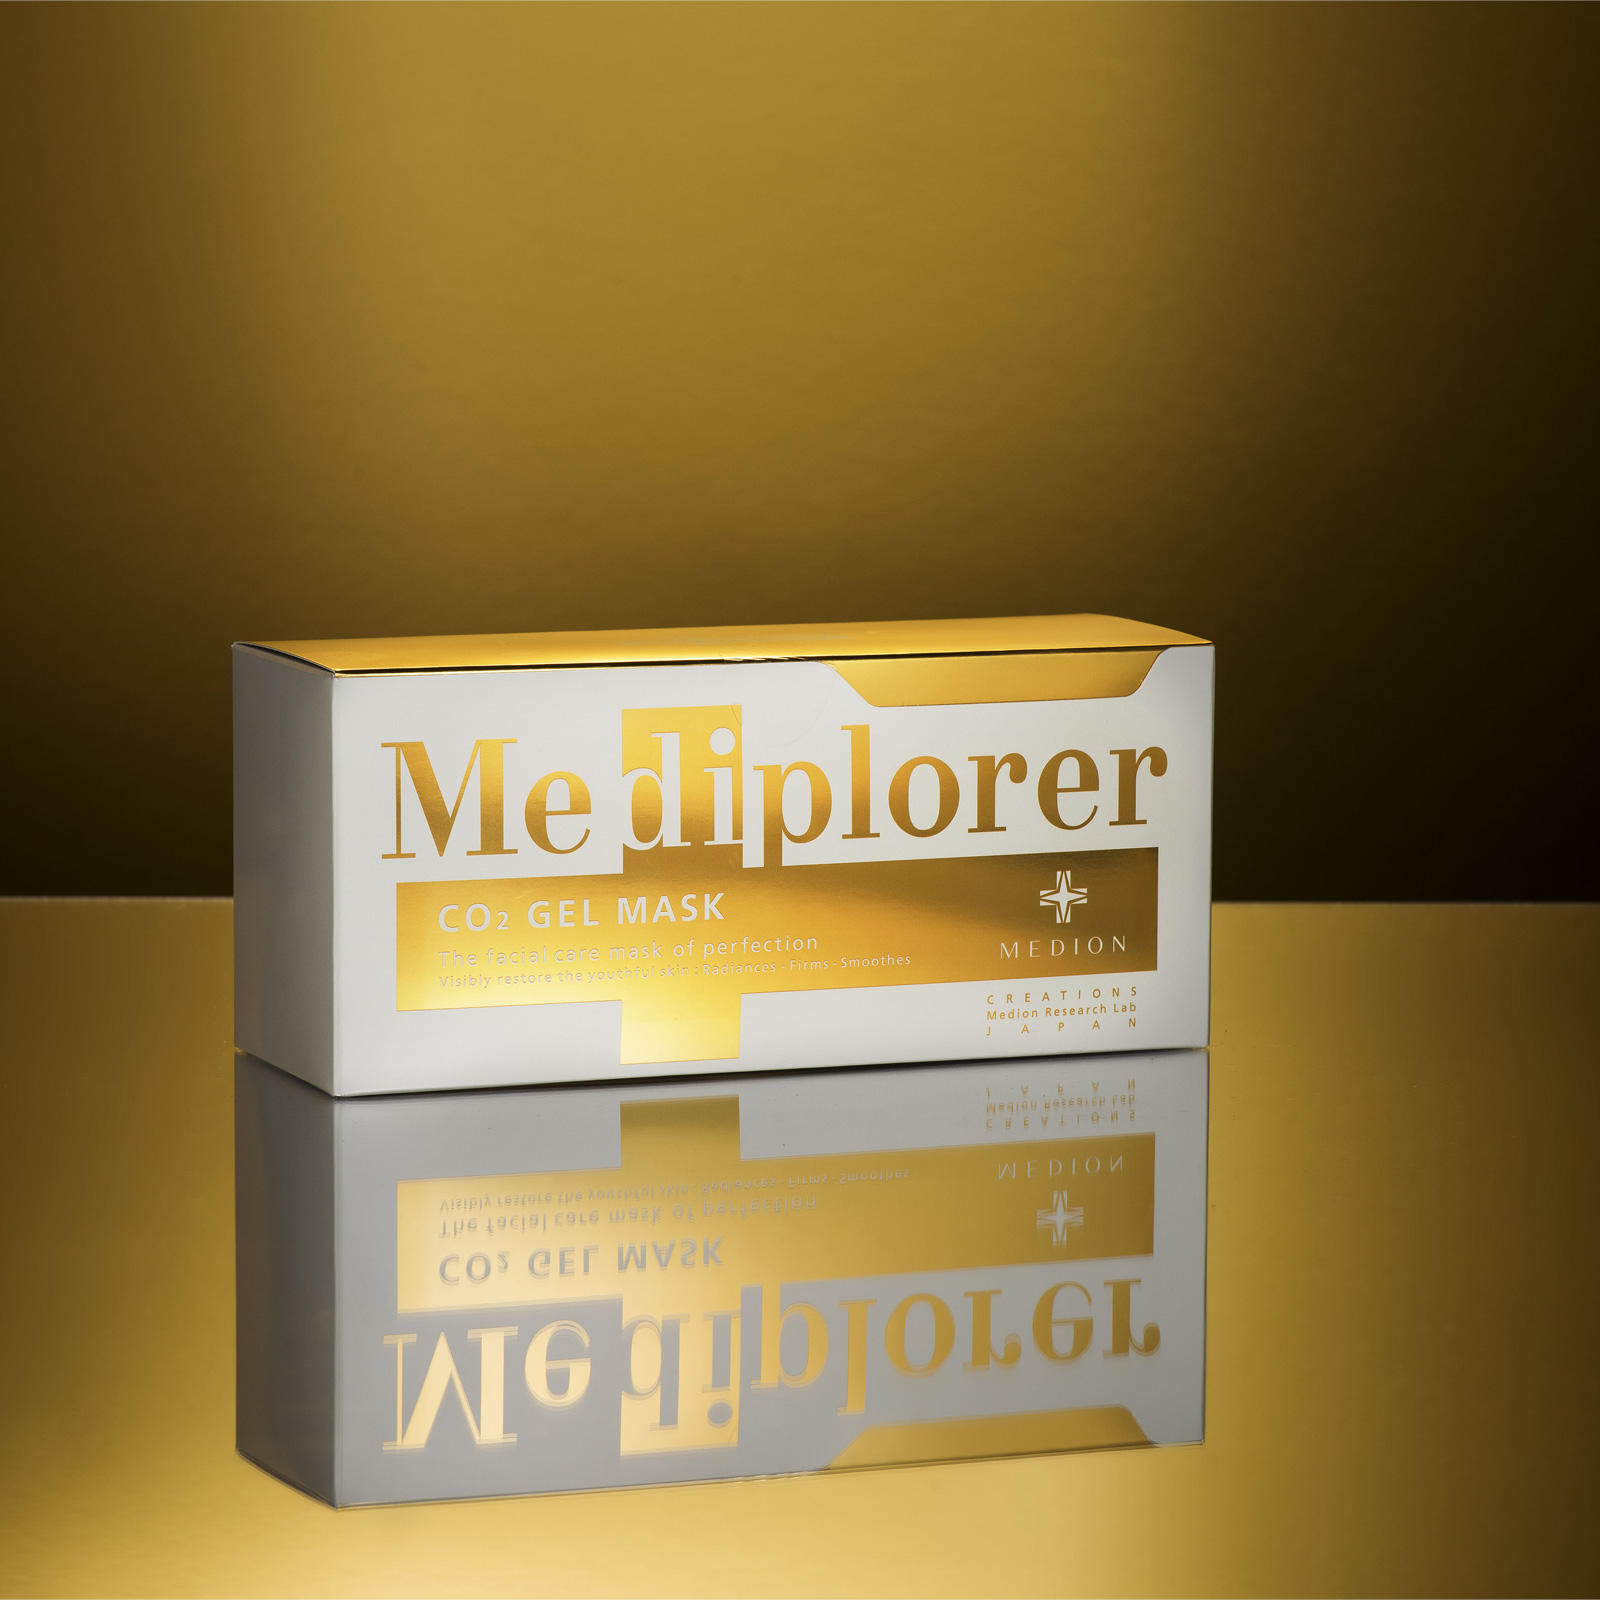 Mediplorer CO2 Gel Mask. Гелевая маска СО2 для лица Медиплорер, гель 26 г x 6 шт., порошок 1.6 г x 6 шт., чашка и шпатель